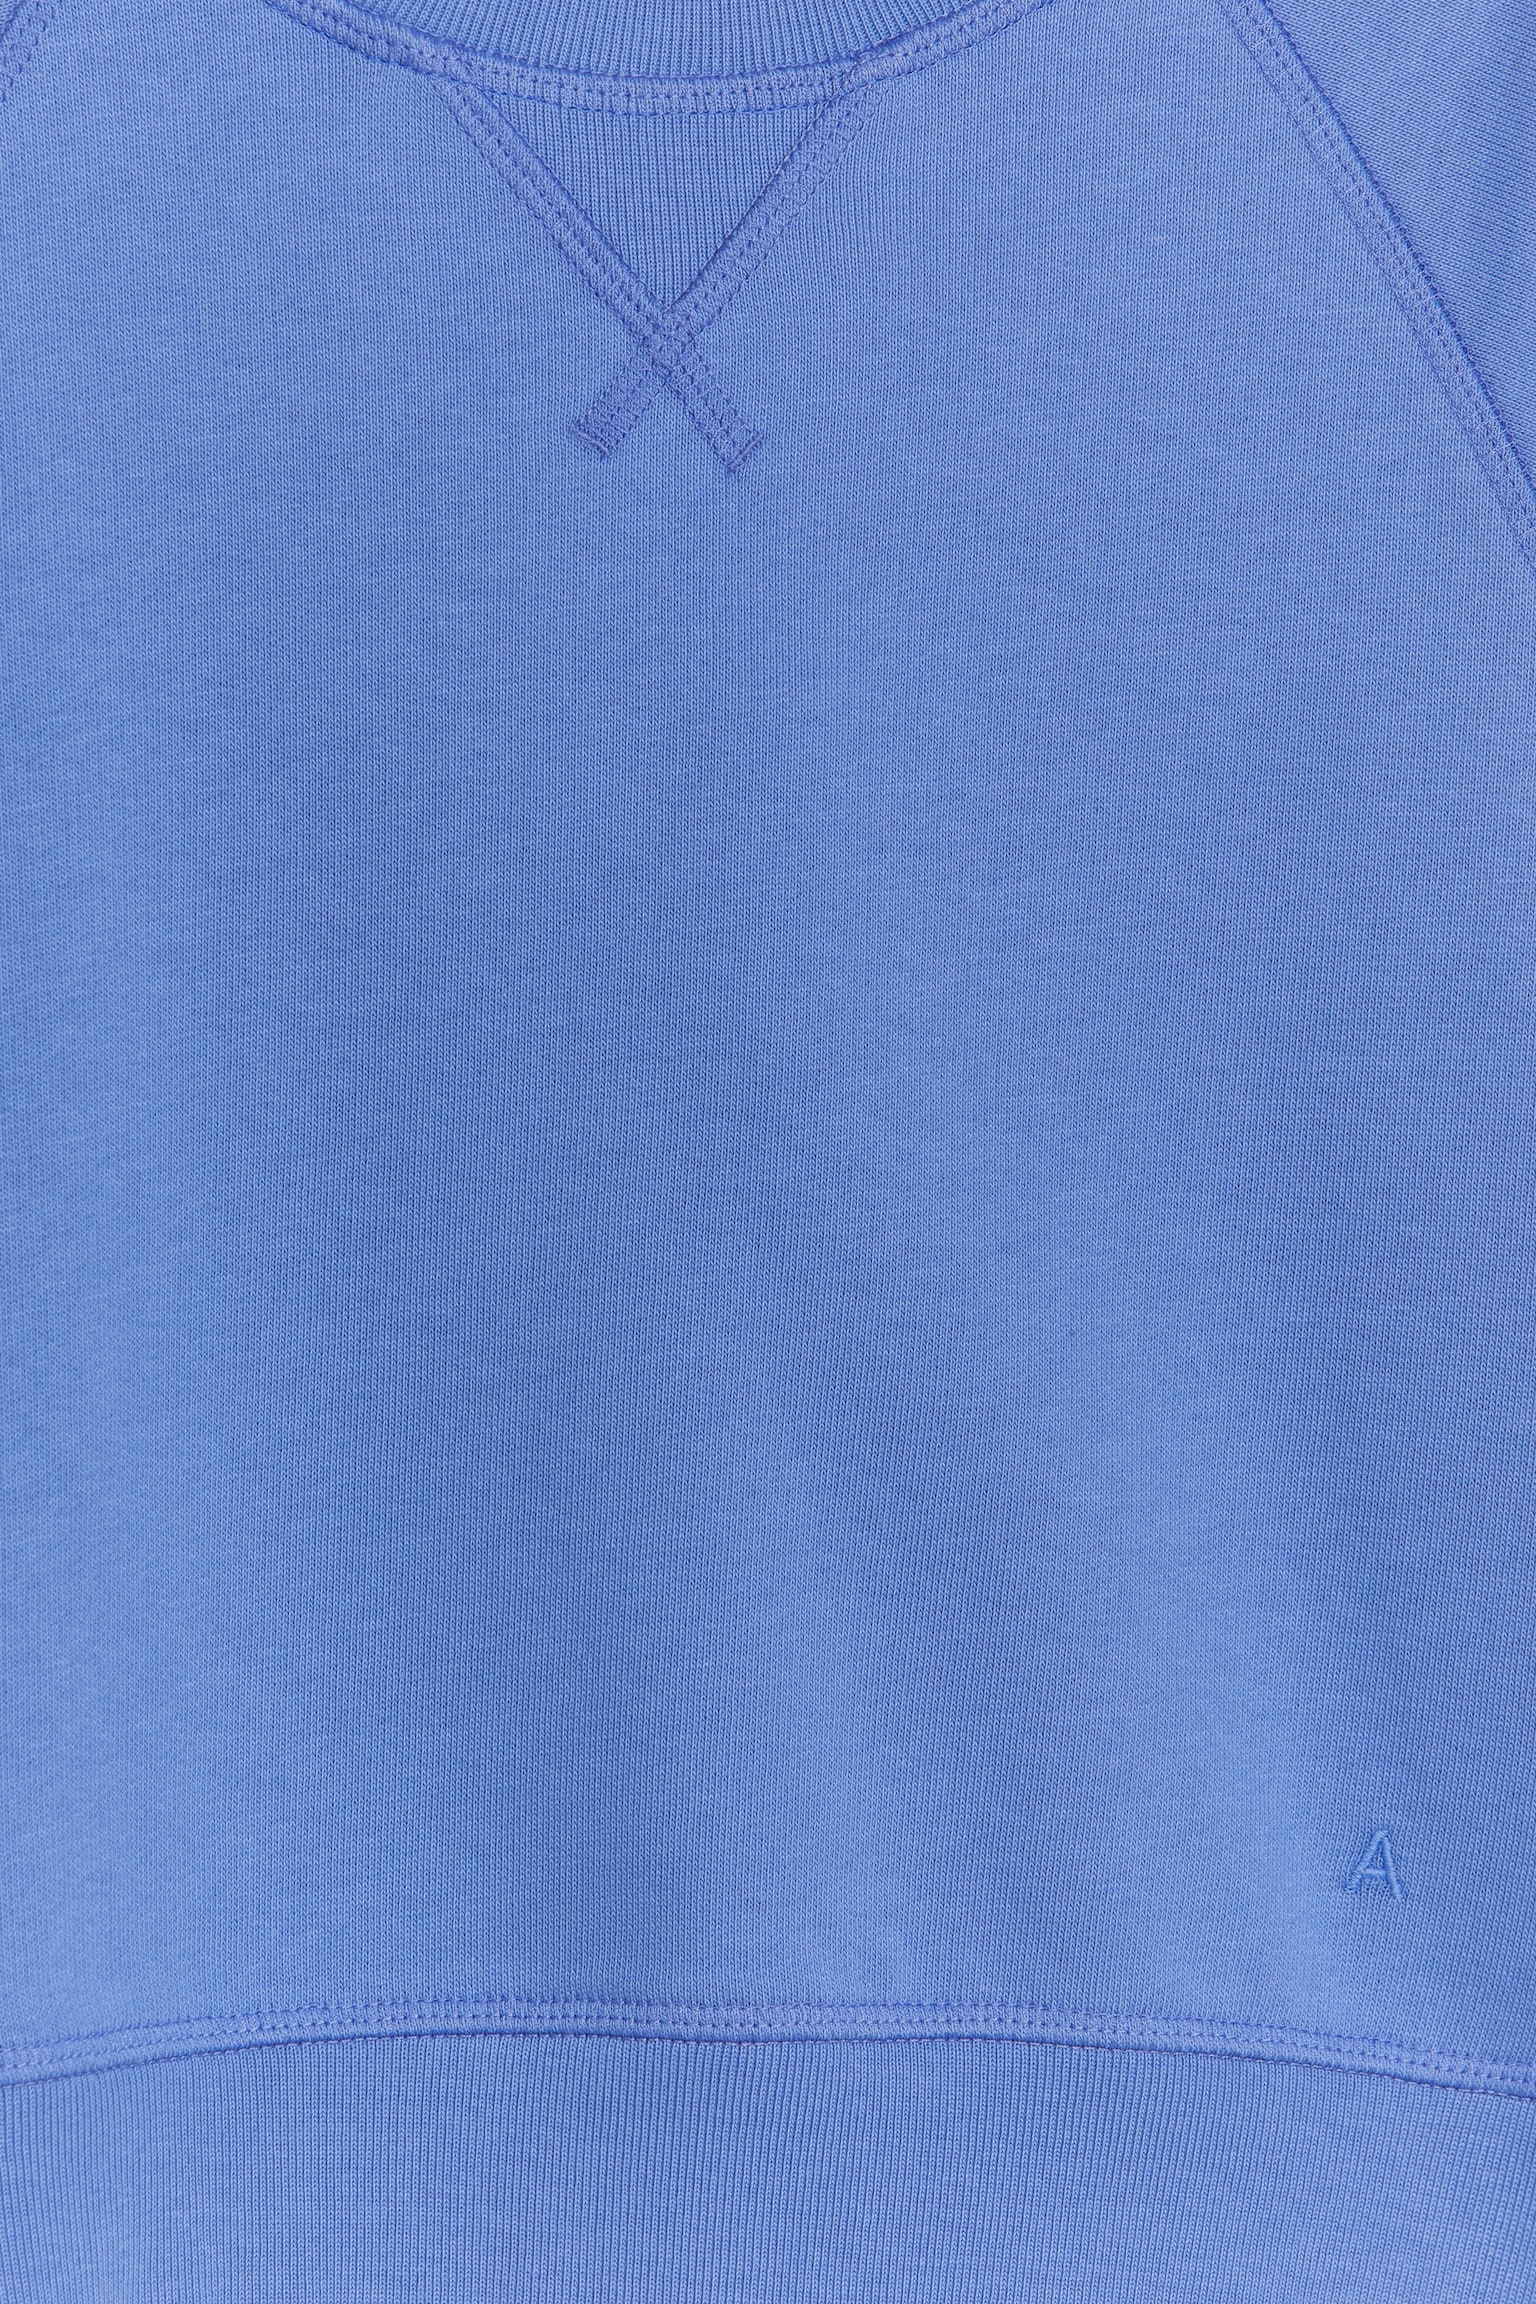 Sweatshirt aus Baumwolle - Blau/Taubenblau/Pfirsich/Rosa/Beige/Graumeliert/Dunkelblau/Orange/Blau/Grün - 5